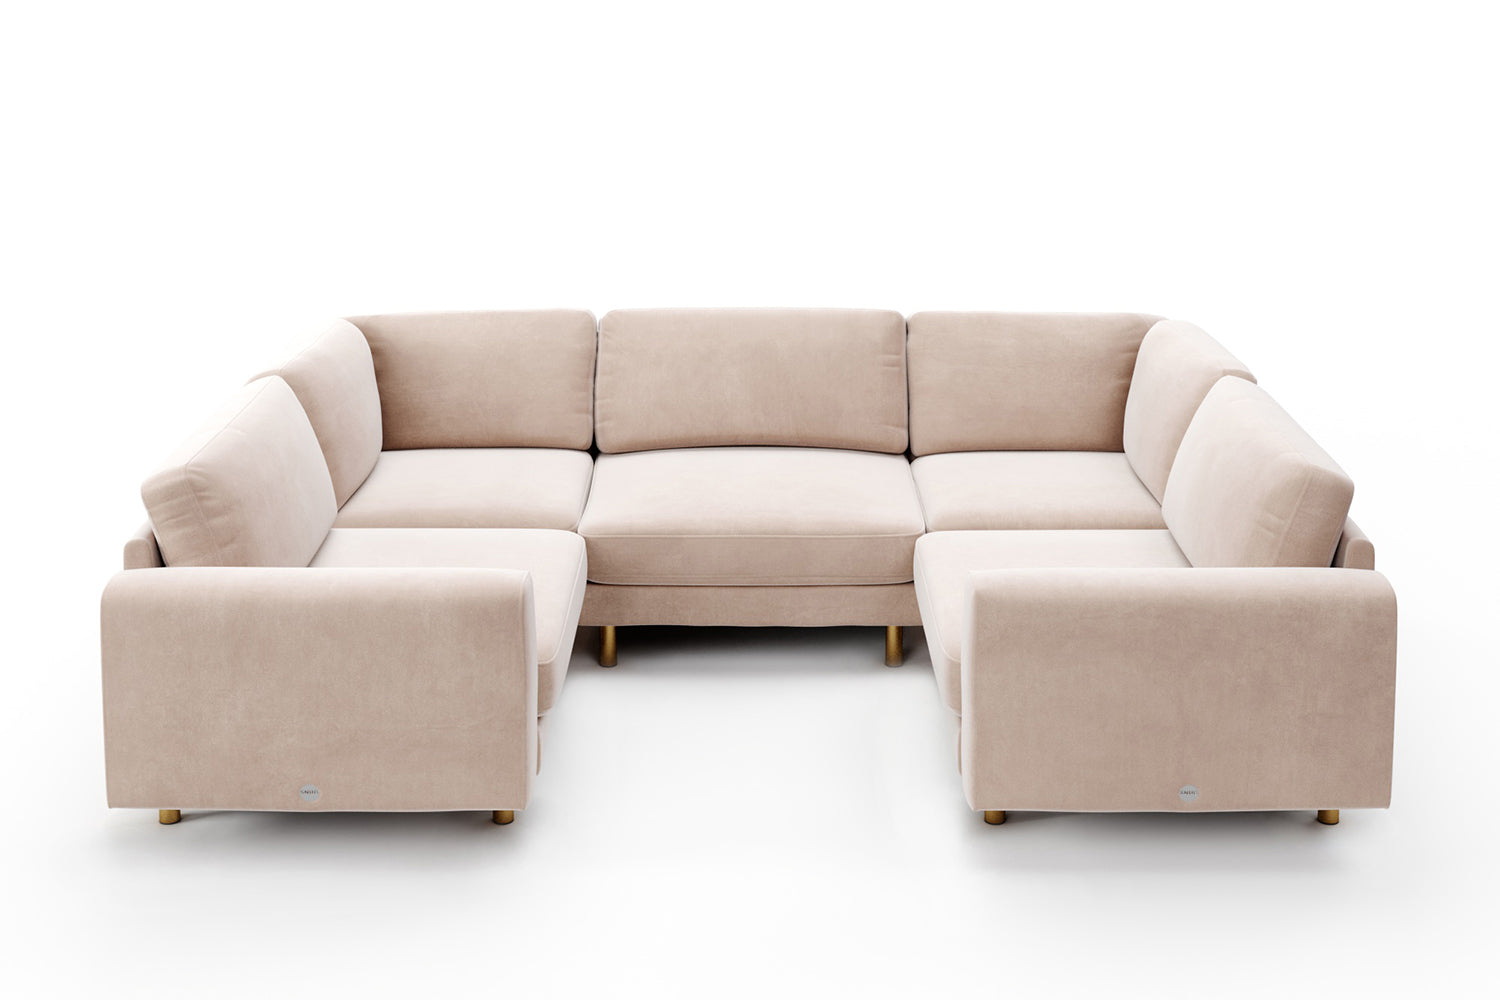 SNUG | The Big Chill Corner Sofa Medium in Taupe